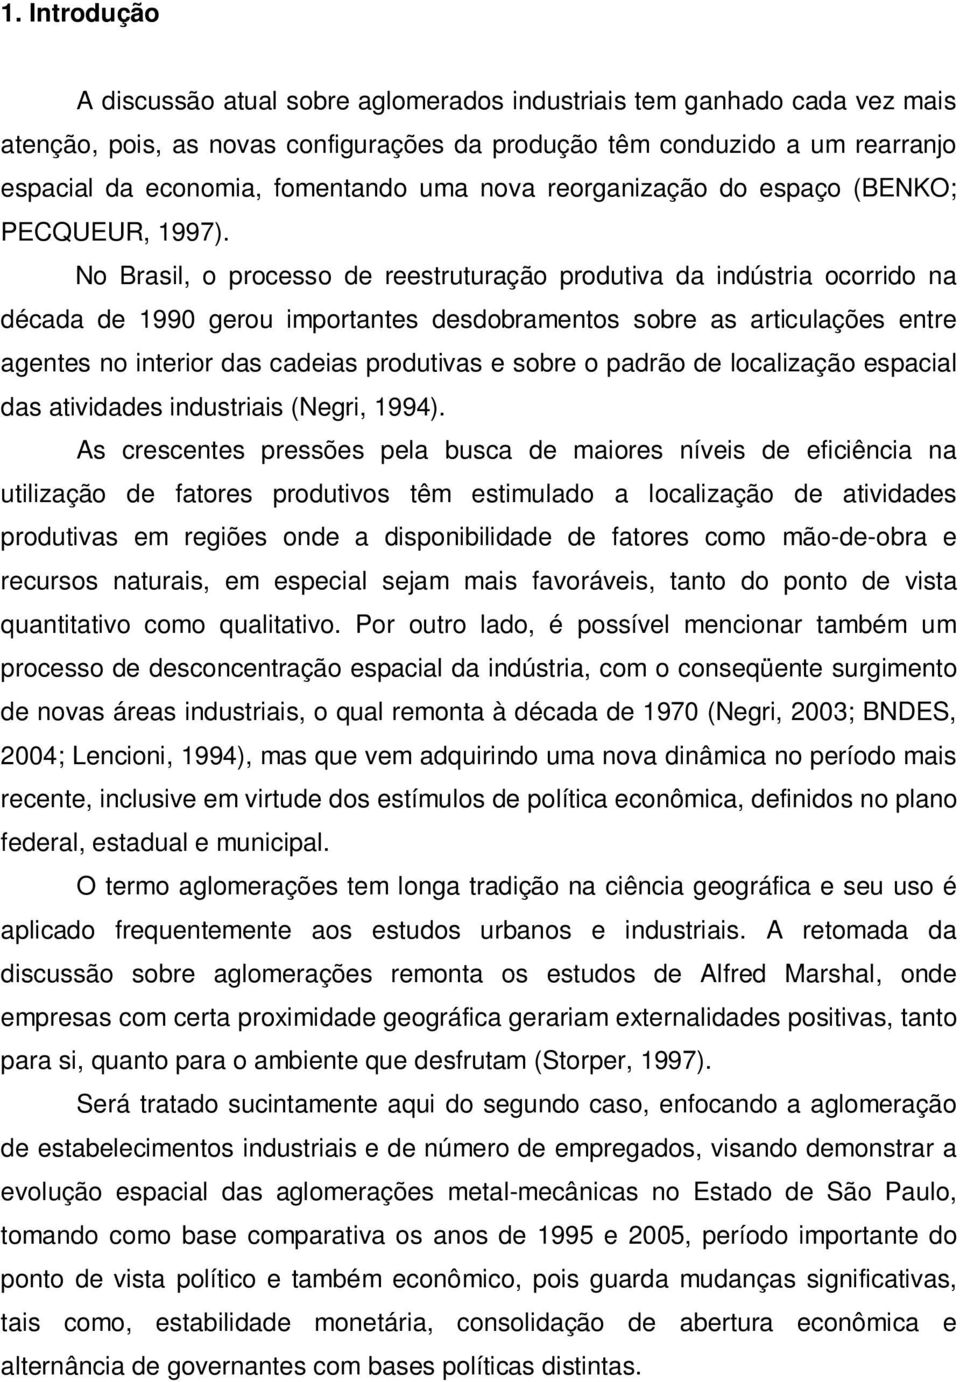 No Brasil, o processo de reestruturação produtiva da indústria ocorrido na década de 1990 gerou importantes desdobramentos sobre as articulações entre agentes no interior das cadeias produtivas e